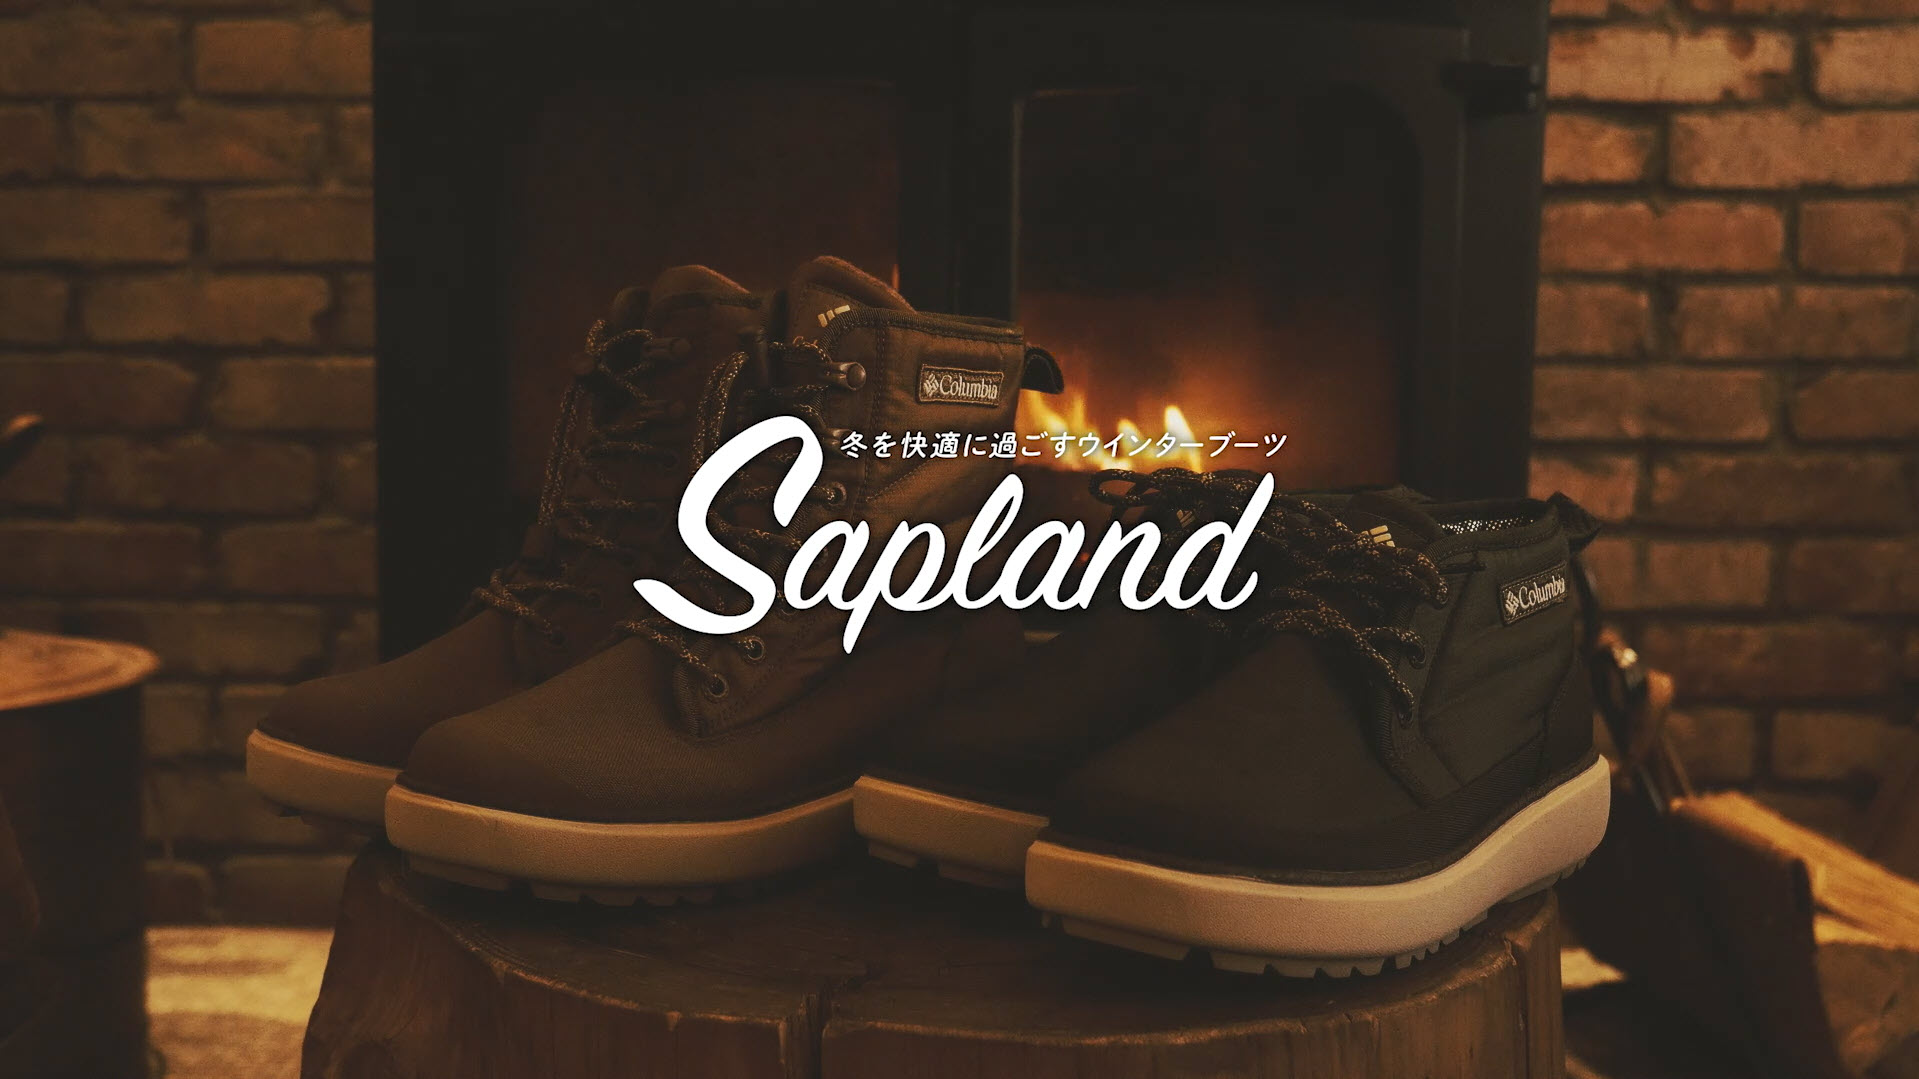   『SAPLAND サップランド』のスペシャルムービーを公開。2都市に住む男女の冬の物語